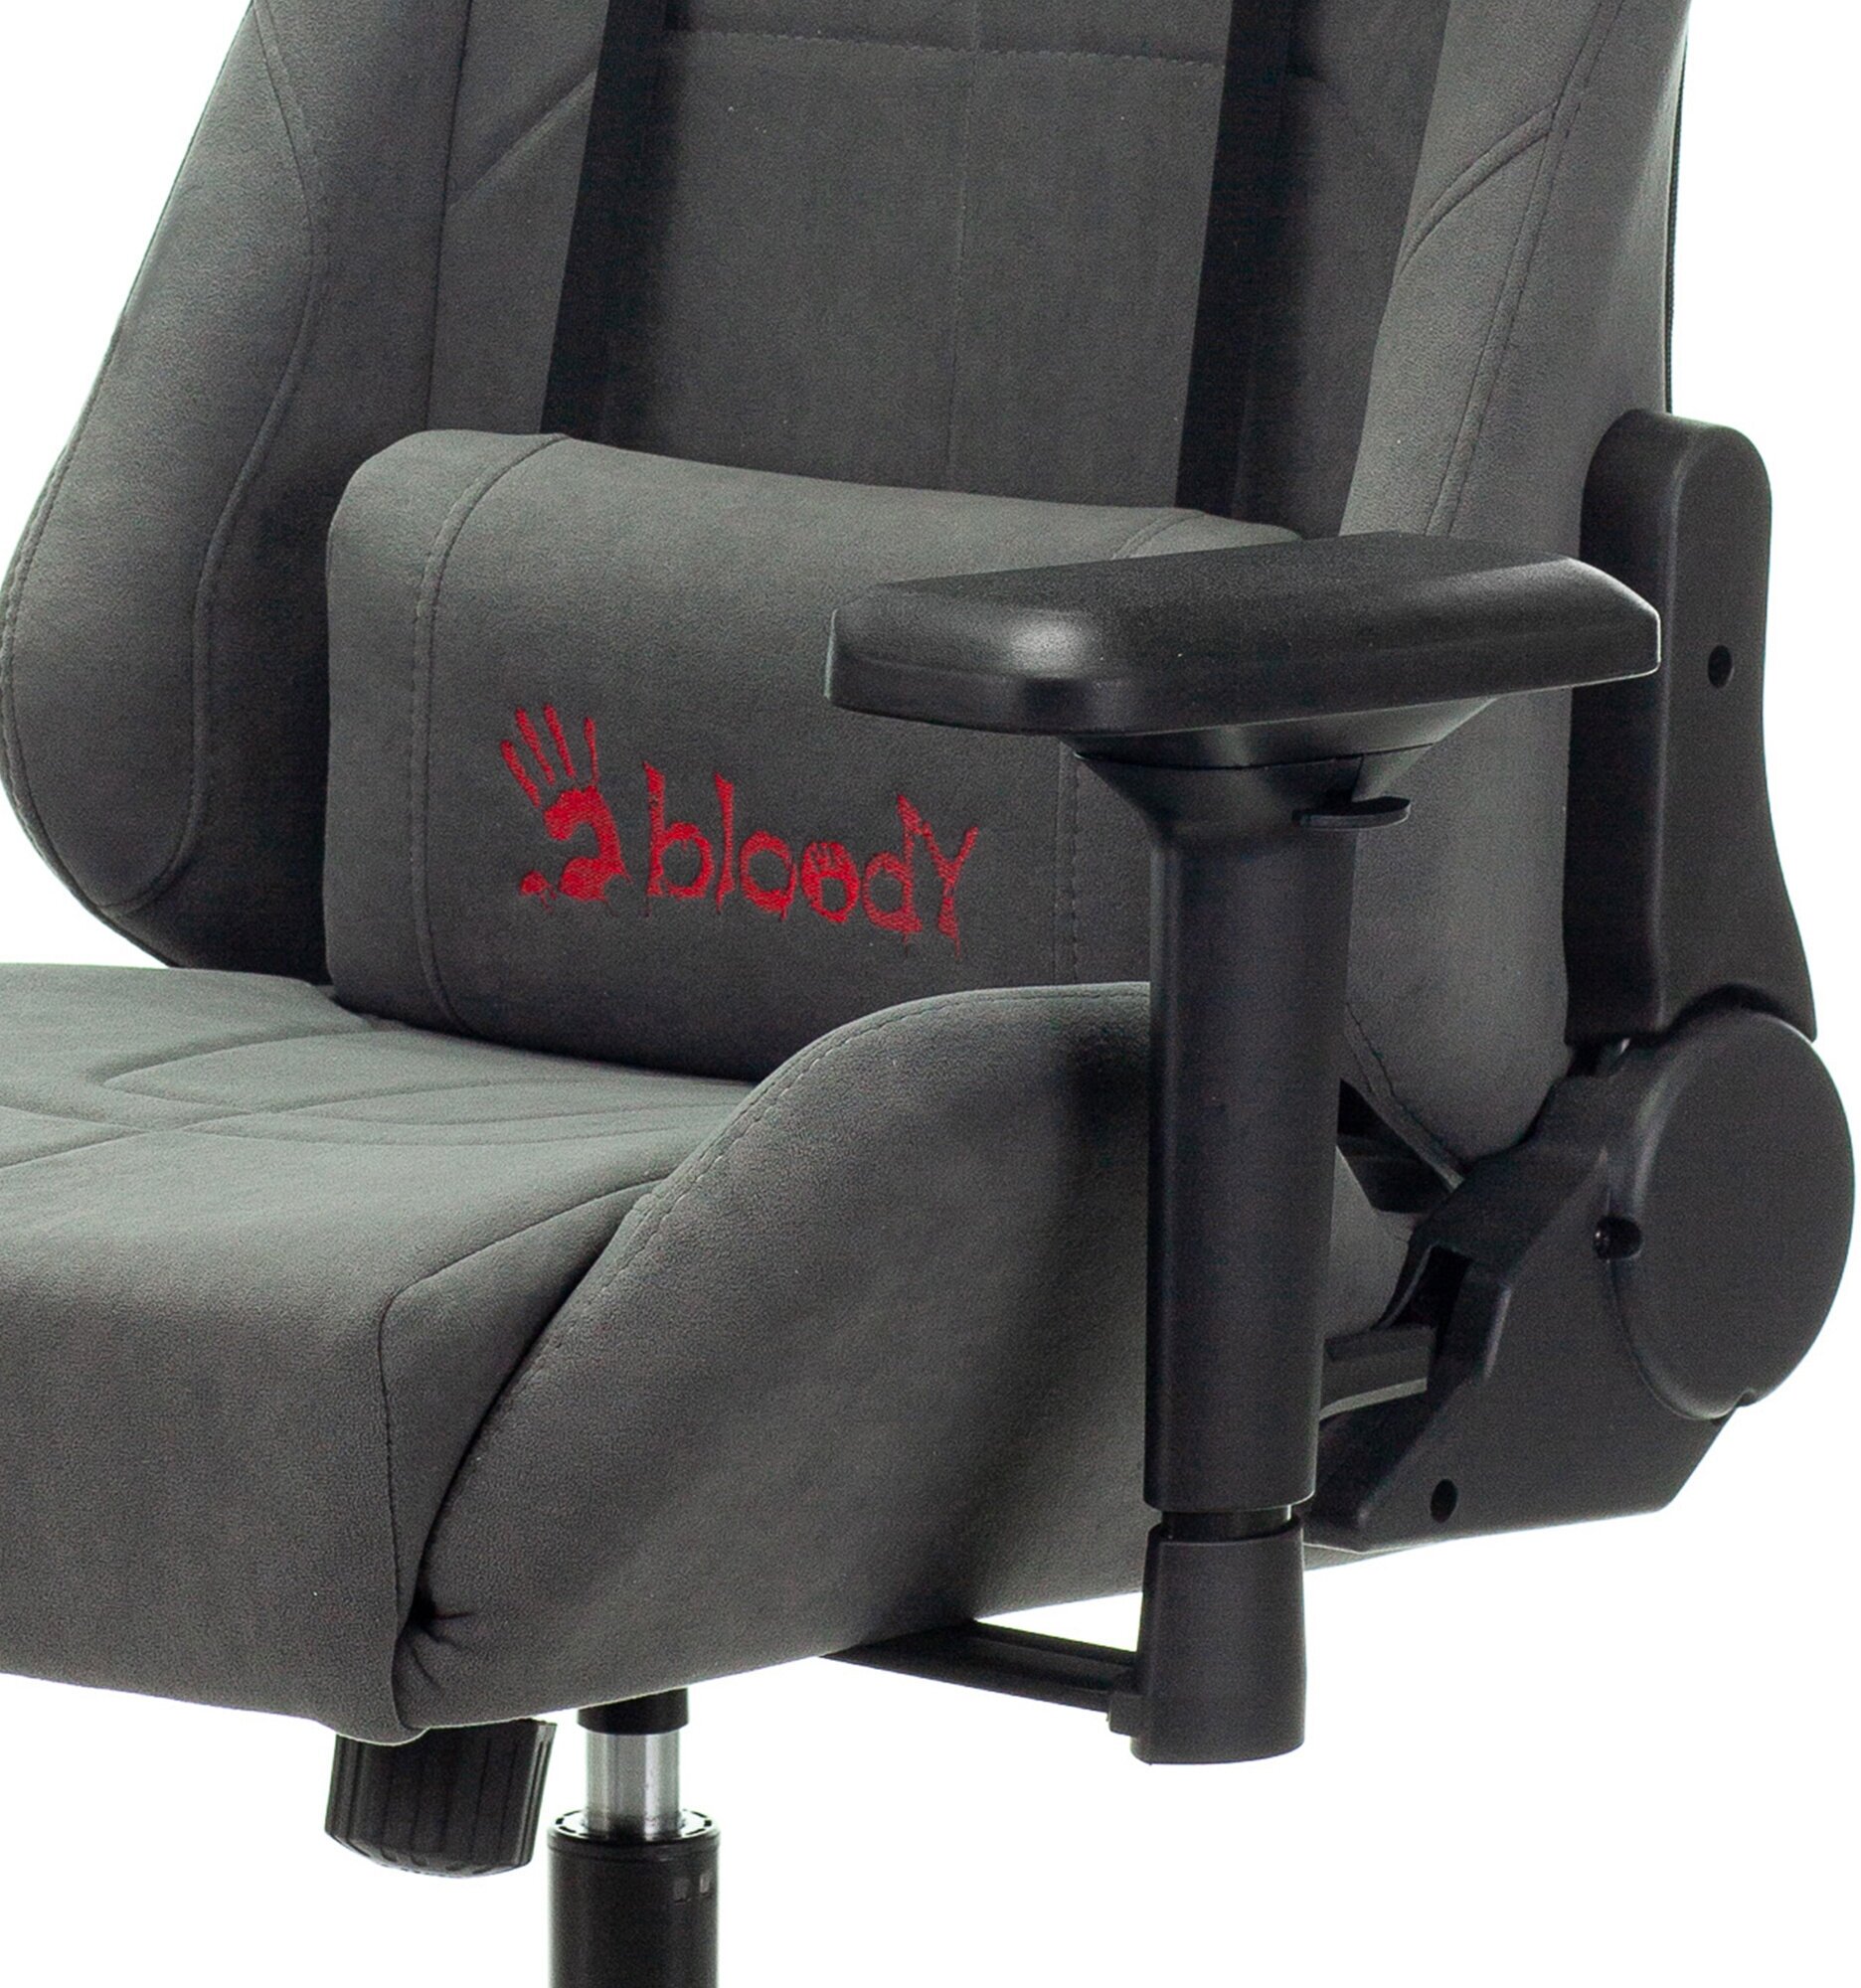 Кресло игровое A4Tech Bloody GC-700 серый крестов. металл